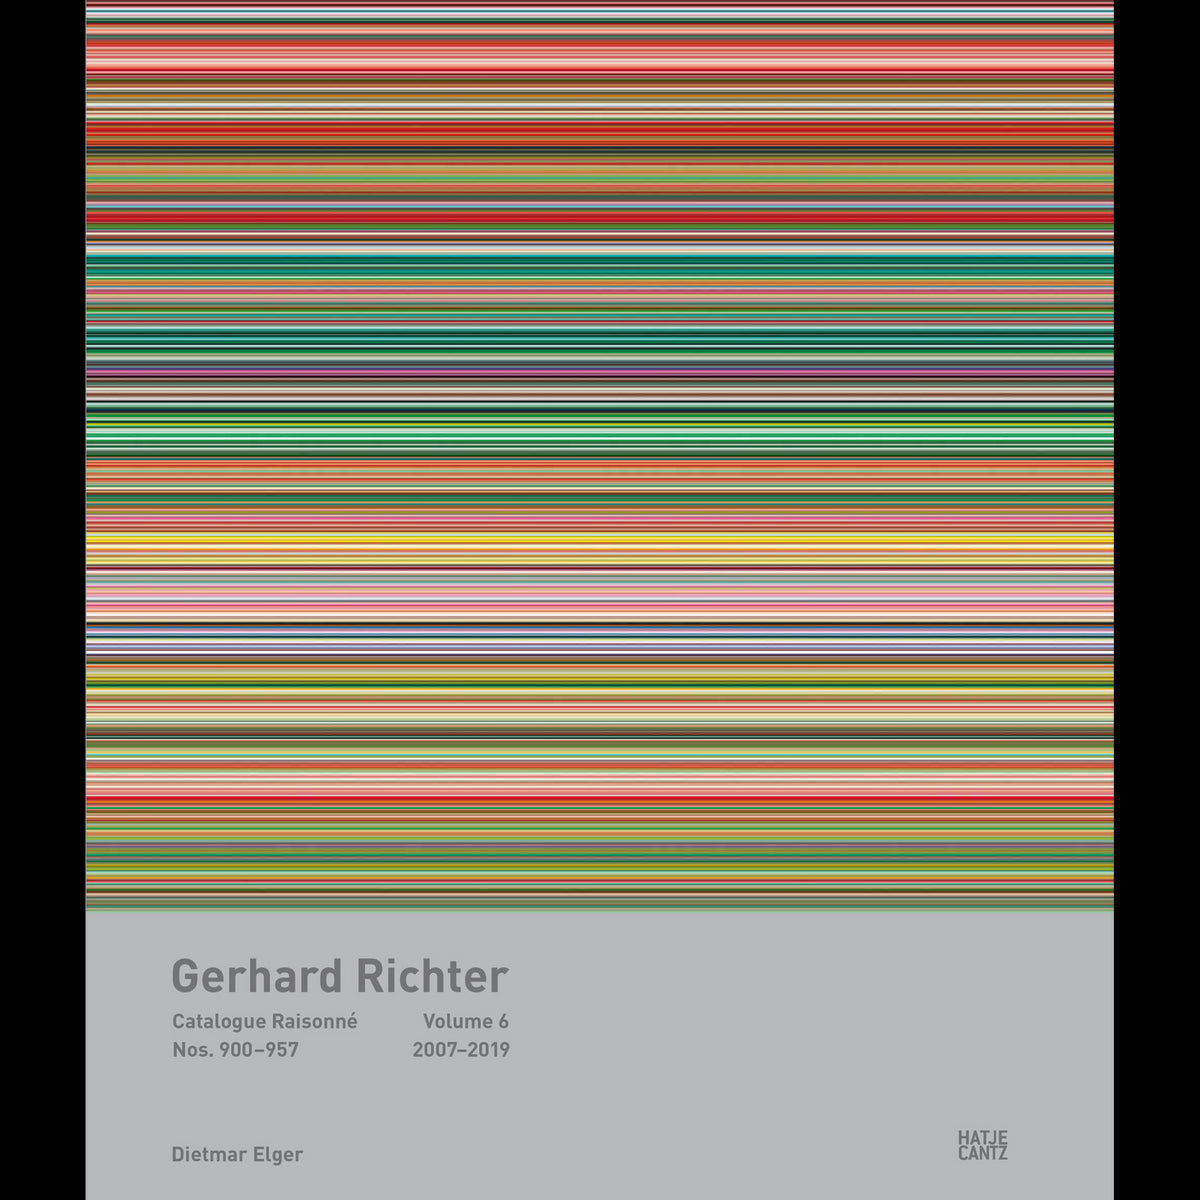 Coverbild Gerhard Richter Catalogue Raisonné. Volume 6